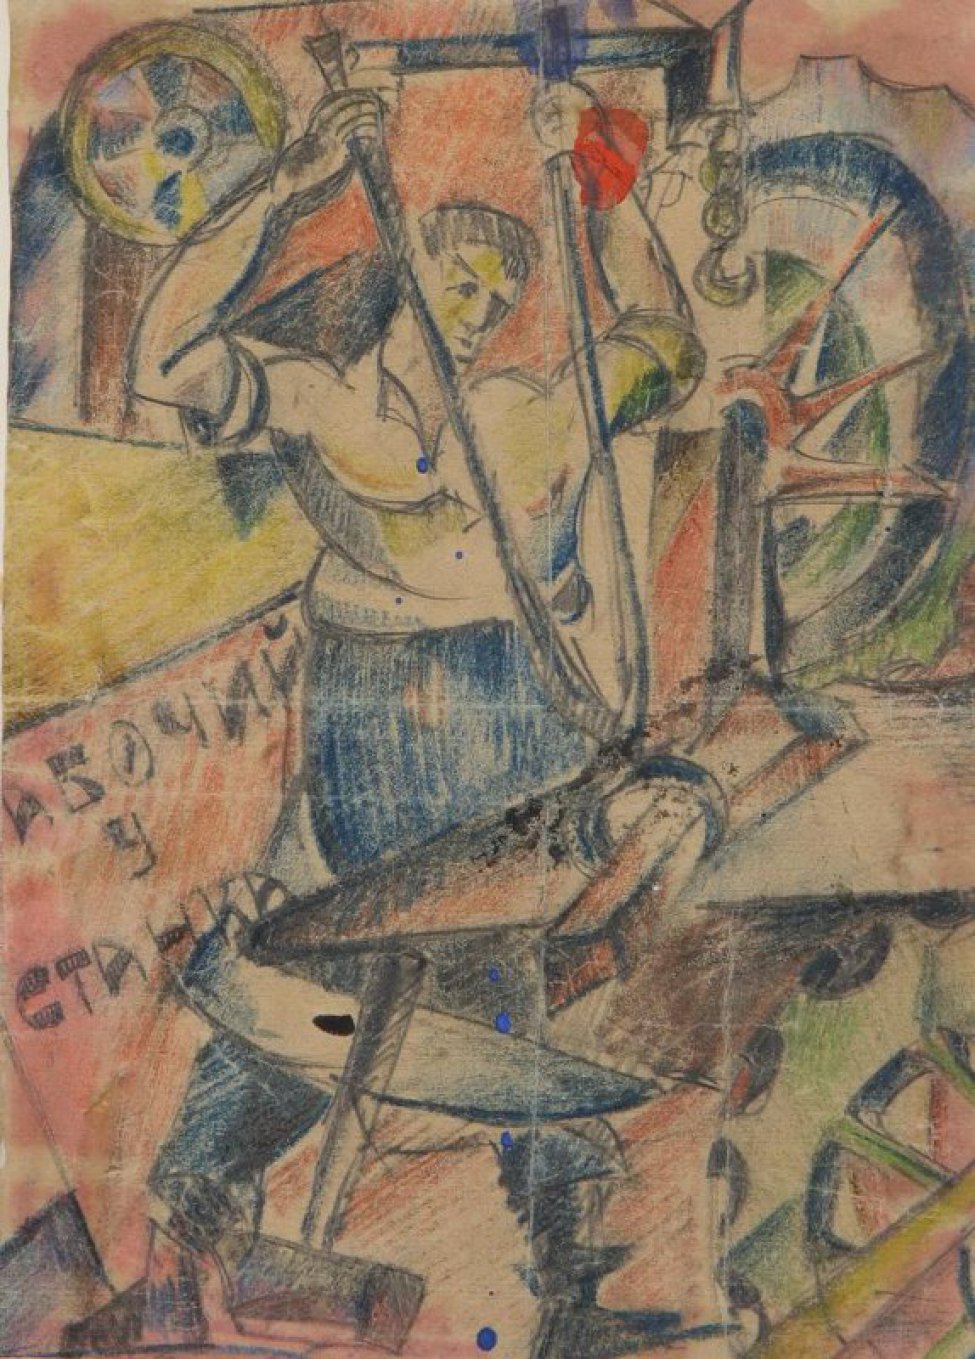 В центре композиции изображен работающий у наковальни рабочий. За ним надпись:" Рабочий у станка".